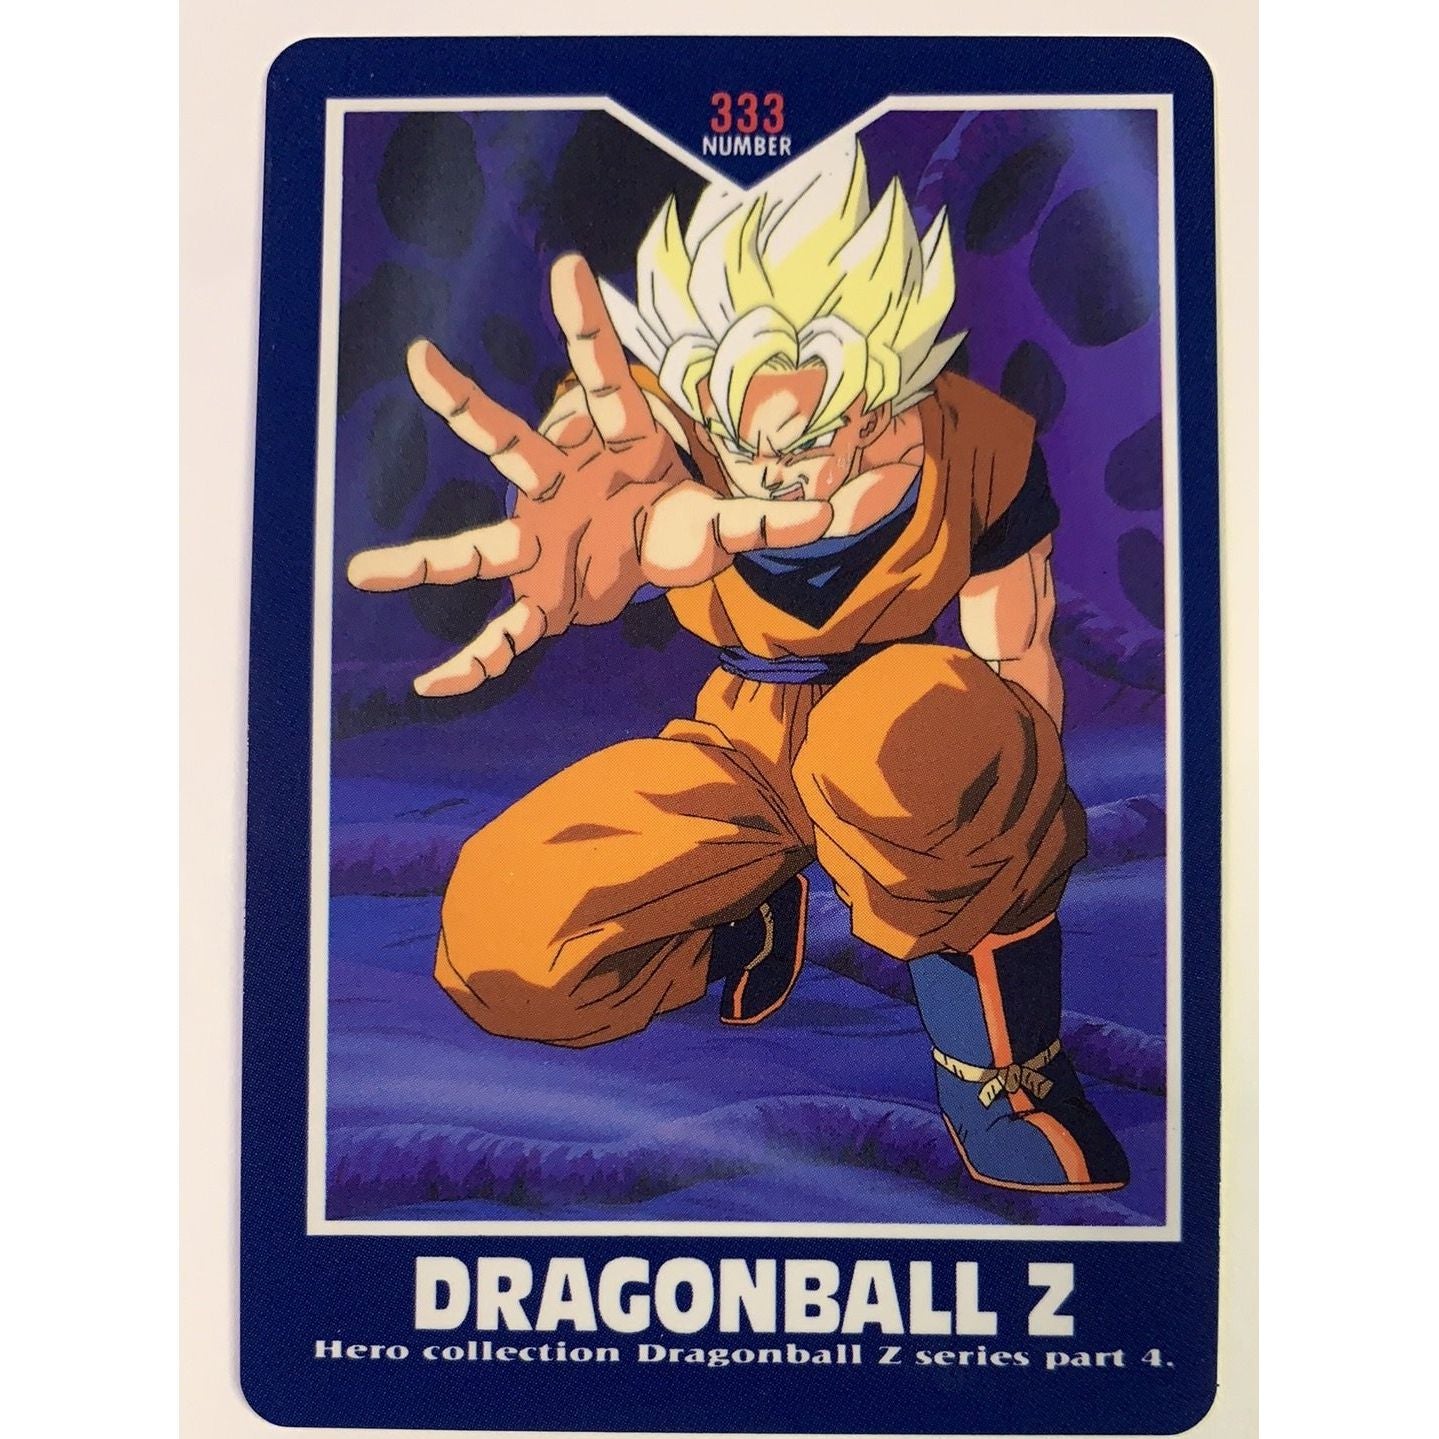  1995 Carte Dragon Ball Z Hero Collection Goku #333  Local Legends Cards & Collectibles